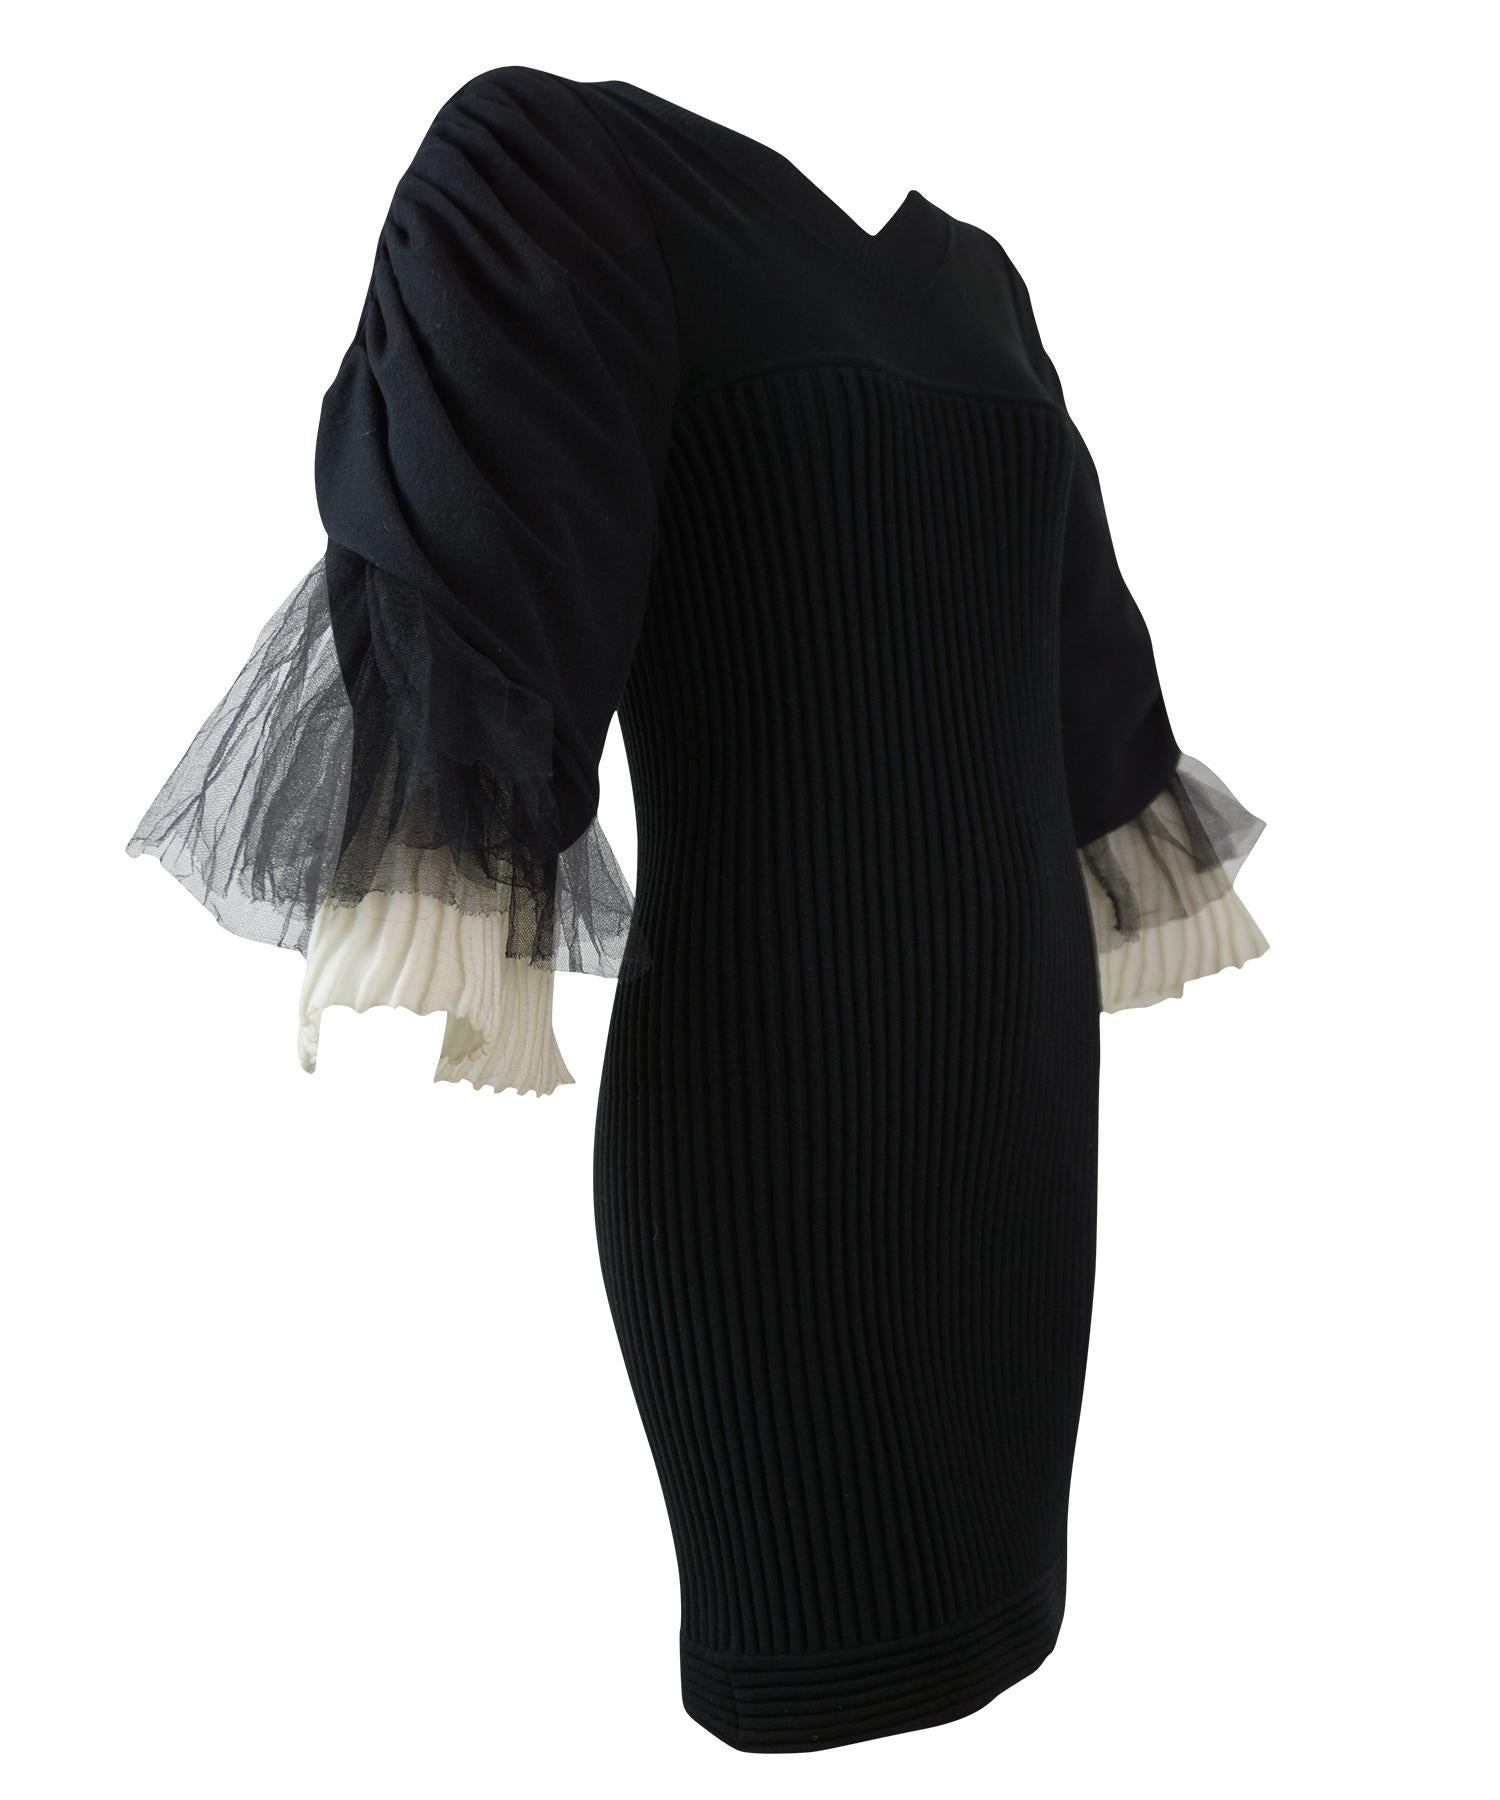 Chanel Schwarzes und cremefarbenes geripptes Kleid. Mit gerüschten Ärmeln aus schwarzem Tüll und weißem Plisseestrick, Bodycon-Mieder aus Rippstrick, Rundhalsausschnitt und CC-Perlen-Reißverschluss am Rücken. Aus der Kollektion Frühjahr 2009.